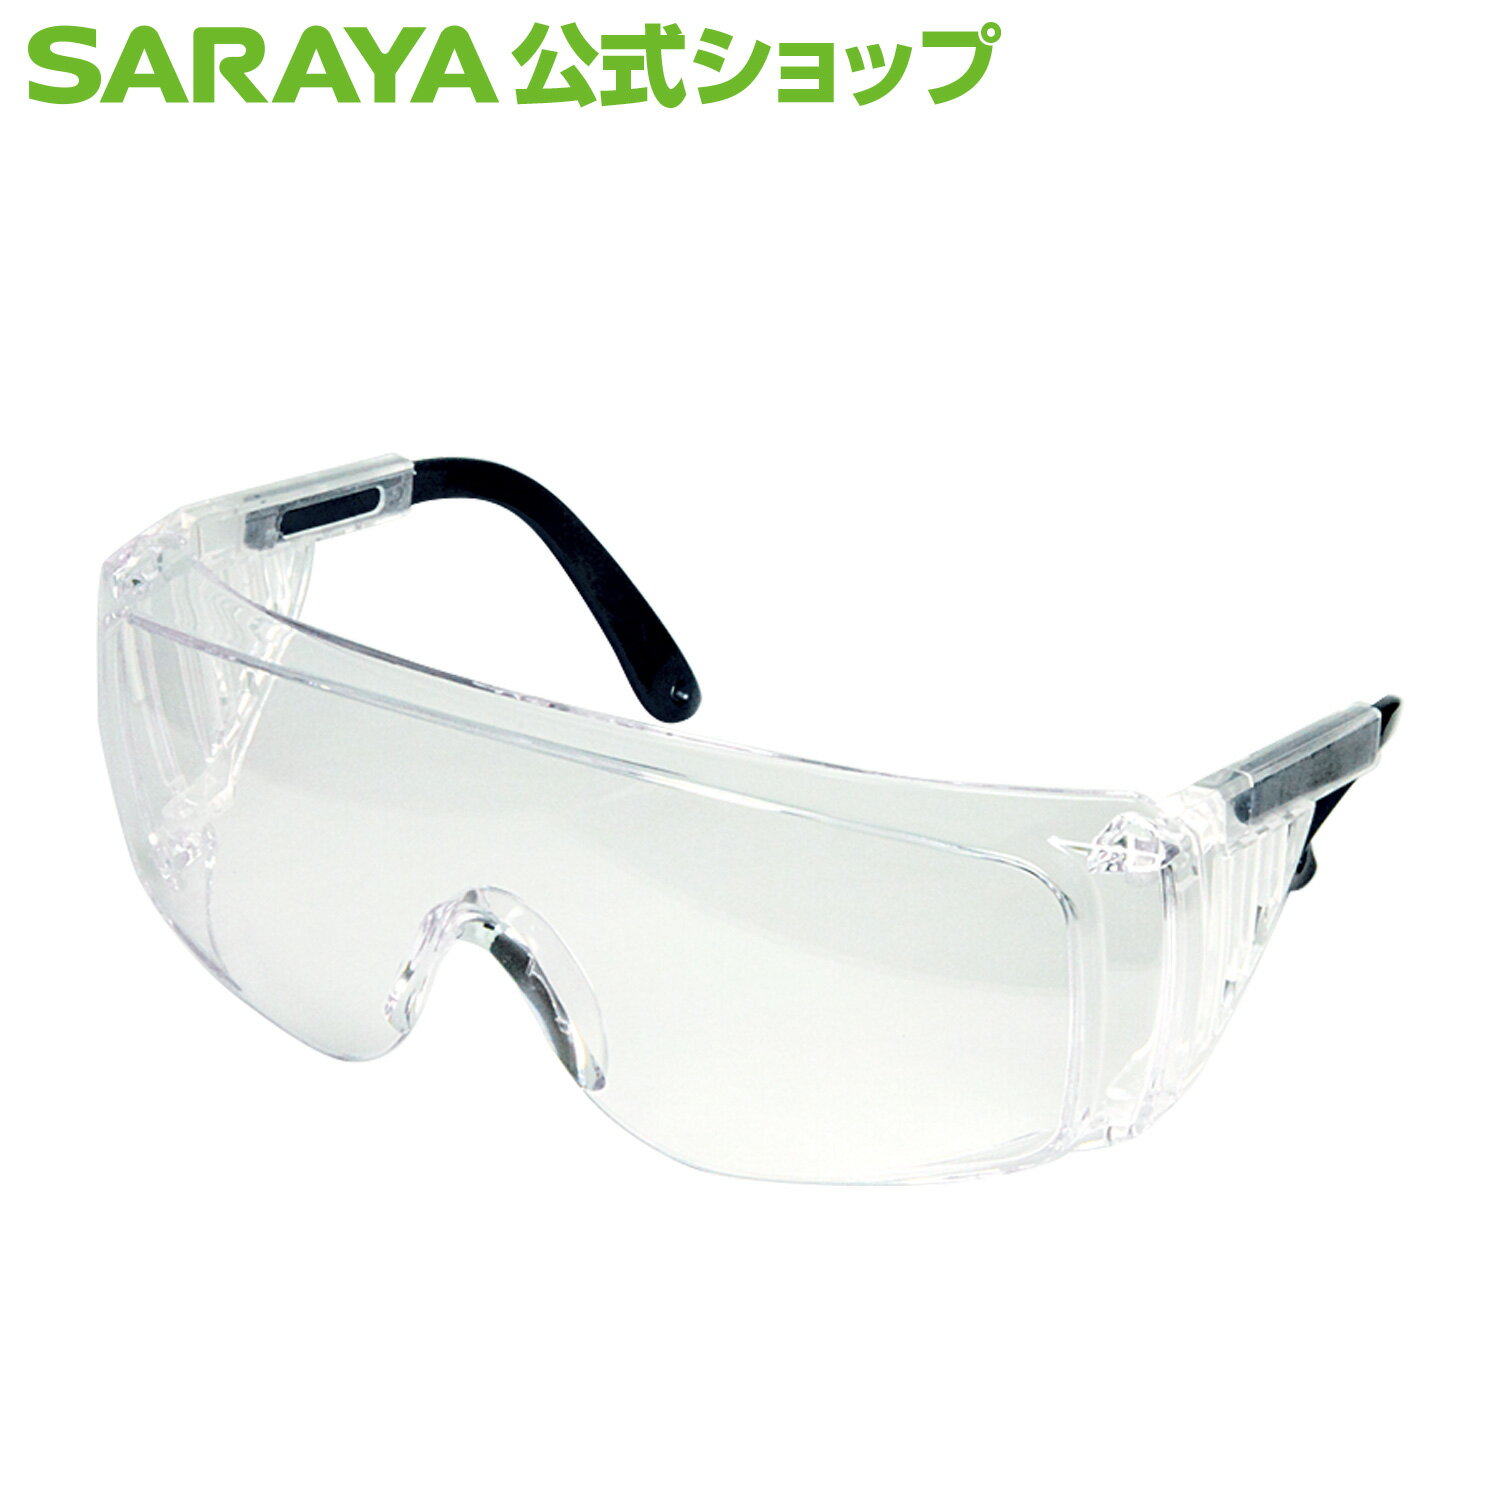 検索用キーワード: メガネ　眼鏡　ゴーグル　防護　個人　オーバーグラス　商品 優しい 製品 サラヤ さらや sarayaサラヤ ゴーグル オーバーグラスタイプ 湿性生体物質の飛沫から医療従事者の眼を守ります。 静電気防止加工 曇り止め加工 テンプル長さ調整可能 サイドプロテクター 眼鏡の上から装着可能 EN166：欧州工場規格、ANSI Z87.1：アメリカ工場規格に準拠 商品詳細 重量 約40g サイズ 幅 250mm × 奥行 43mm × 高さ 105mm 材質 レンズ：ポリカーボネート、フレーム：ナイロン、袋：PE 使用上の注意 本製品は湿性生体物質等の飛沫から眼を守ることを目的としています。それ以外の目的には使用しないでください。 化学物質の飛沫または化学物質の蒸気露出からの保護のために本製品を使用しないでください。破損により顔面を損傷する可能性があります。 激しい衝撃を受ける可能性がある場合は、使用しないでください。破損により顔面を損傷する可能性があります。 レンズの曇り止め機能は永続的なものではありません。使われる環境によっては機能が失われることがあります。 本品は未滅菌です。